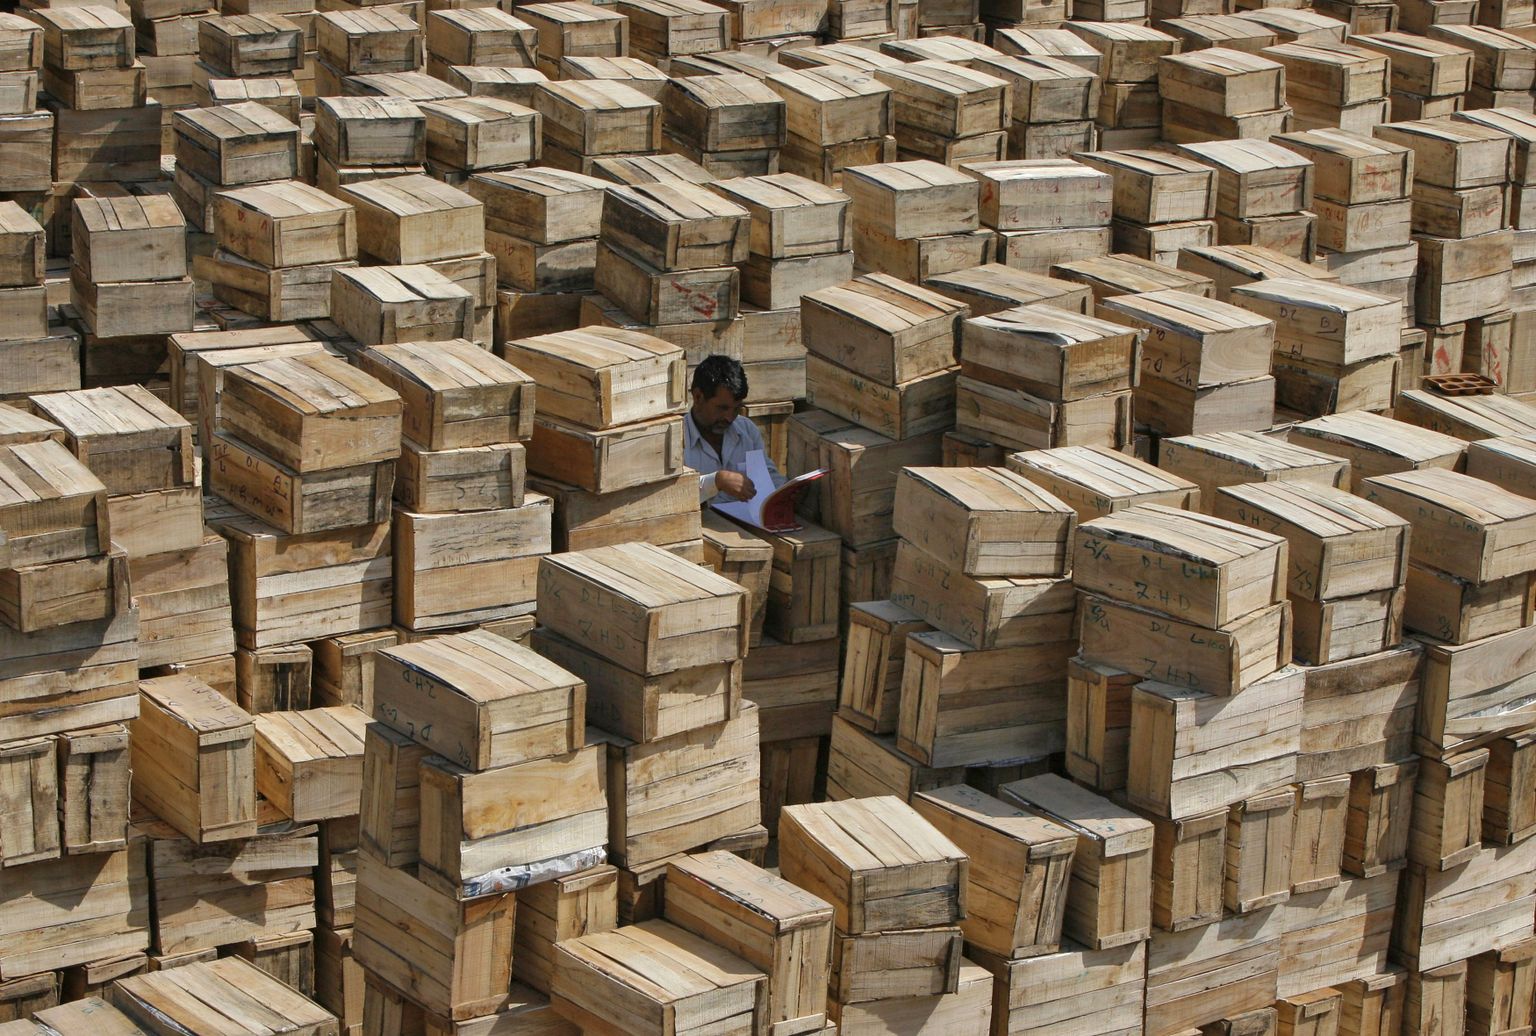 Põllumajandusamet on kontrollinud Hiinast pärit kivide ja terastoodete puidust pakkematerjali alates 1. aprillist 2013. Ligikaudu 2% kontrollitud puidust pakenditest on olnud saastunud elusate taimekahjustajatega.